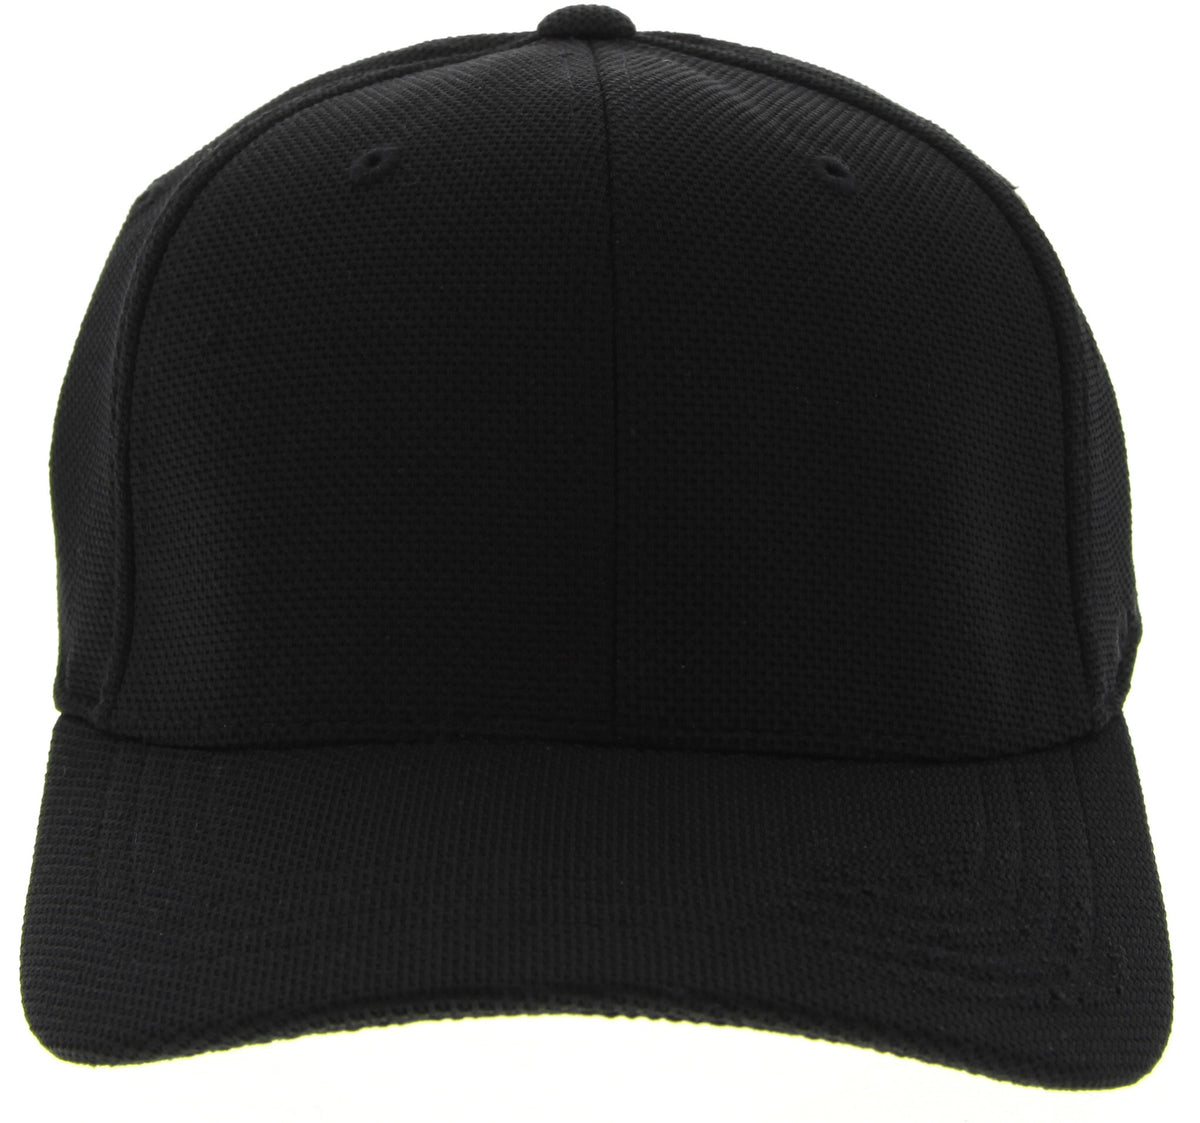 Pique Mesh Flexfit Cap in Black